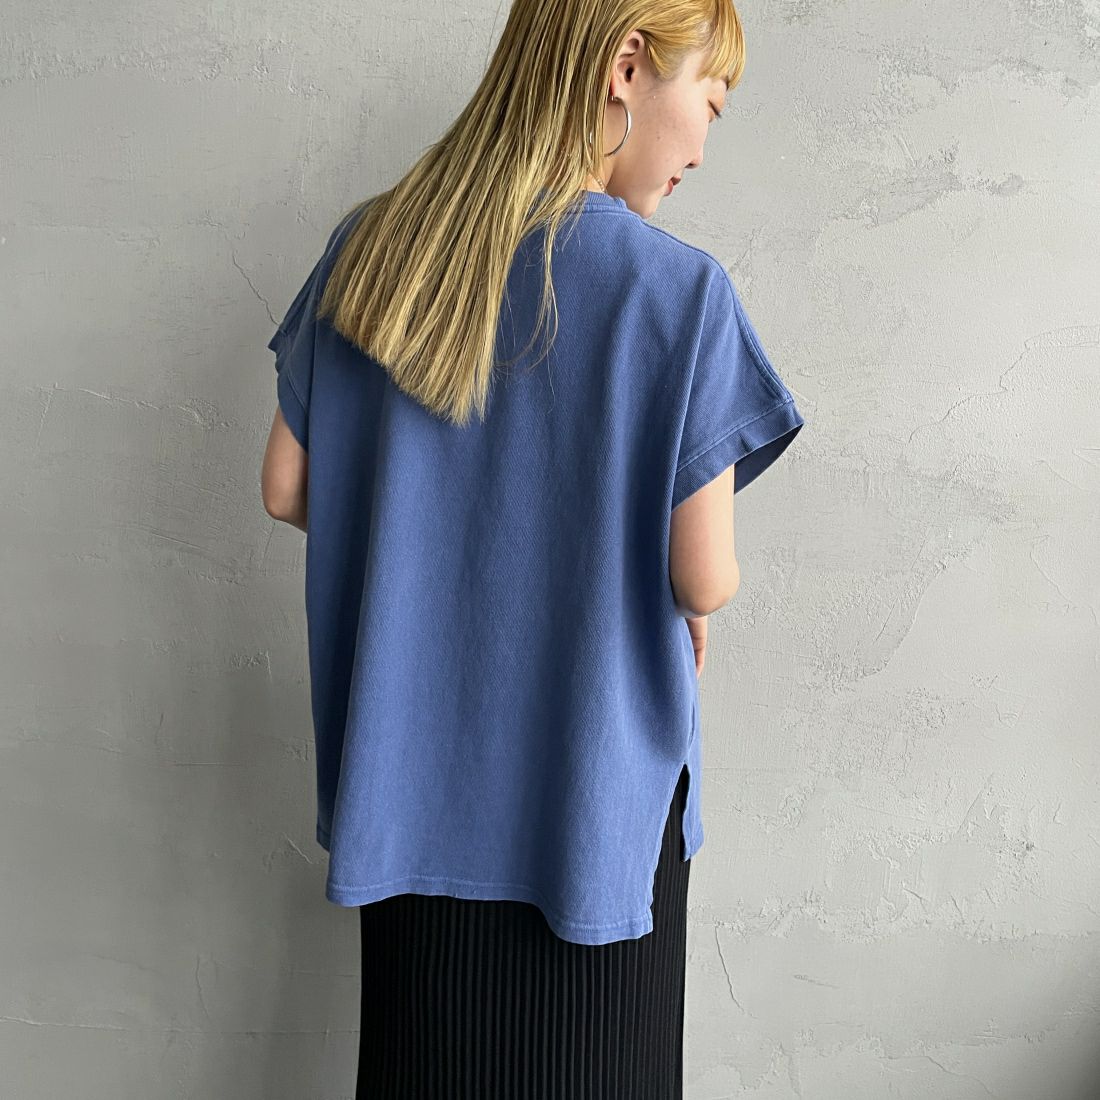 MICA&DEAL [マイカアンドディール] CAROLINAロゴ ピグメントバイオ サイドスリットTシャツ [0124209080] BLUE &&モデル身長：156cm 着用サイズ：F&&